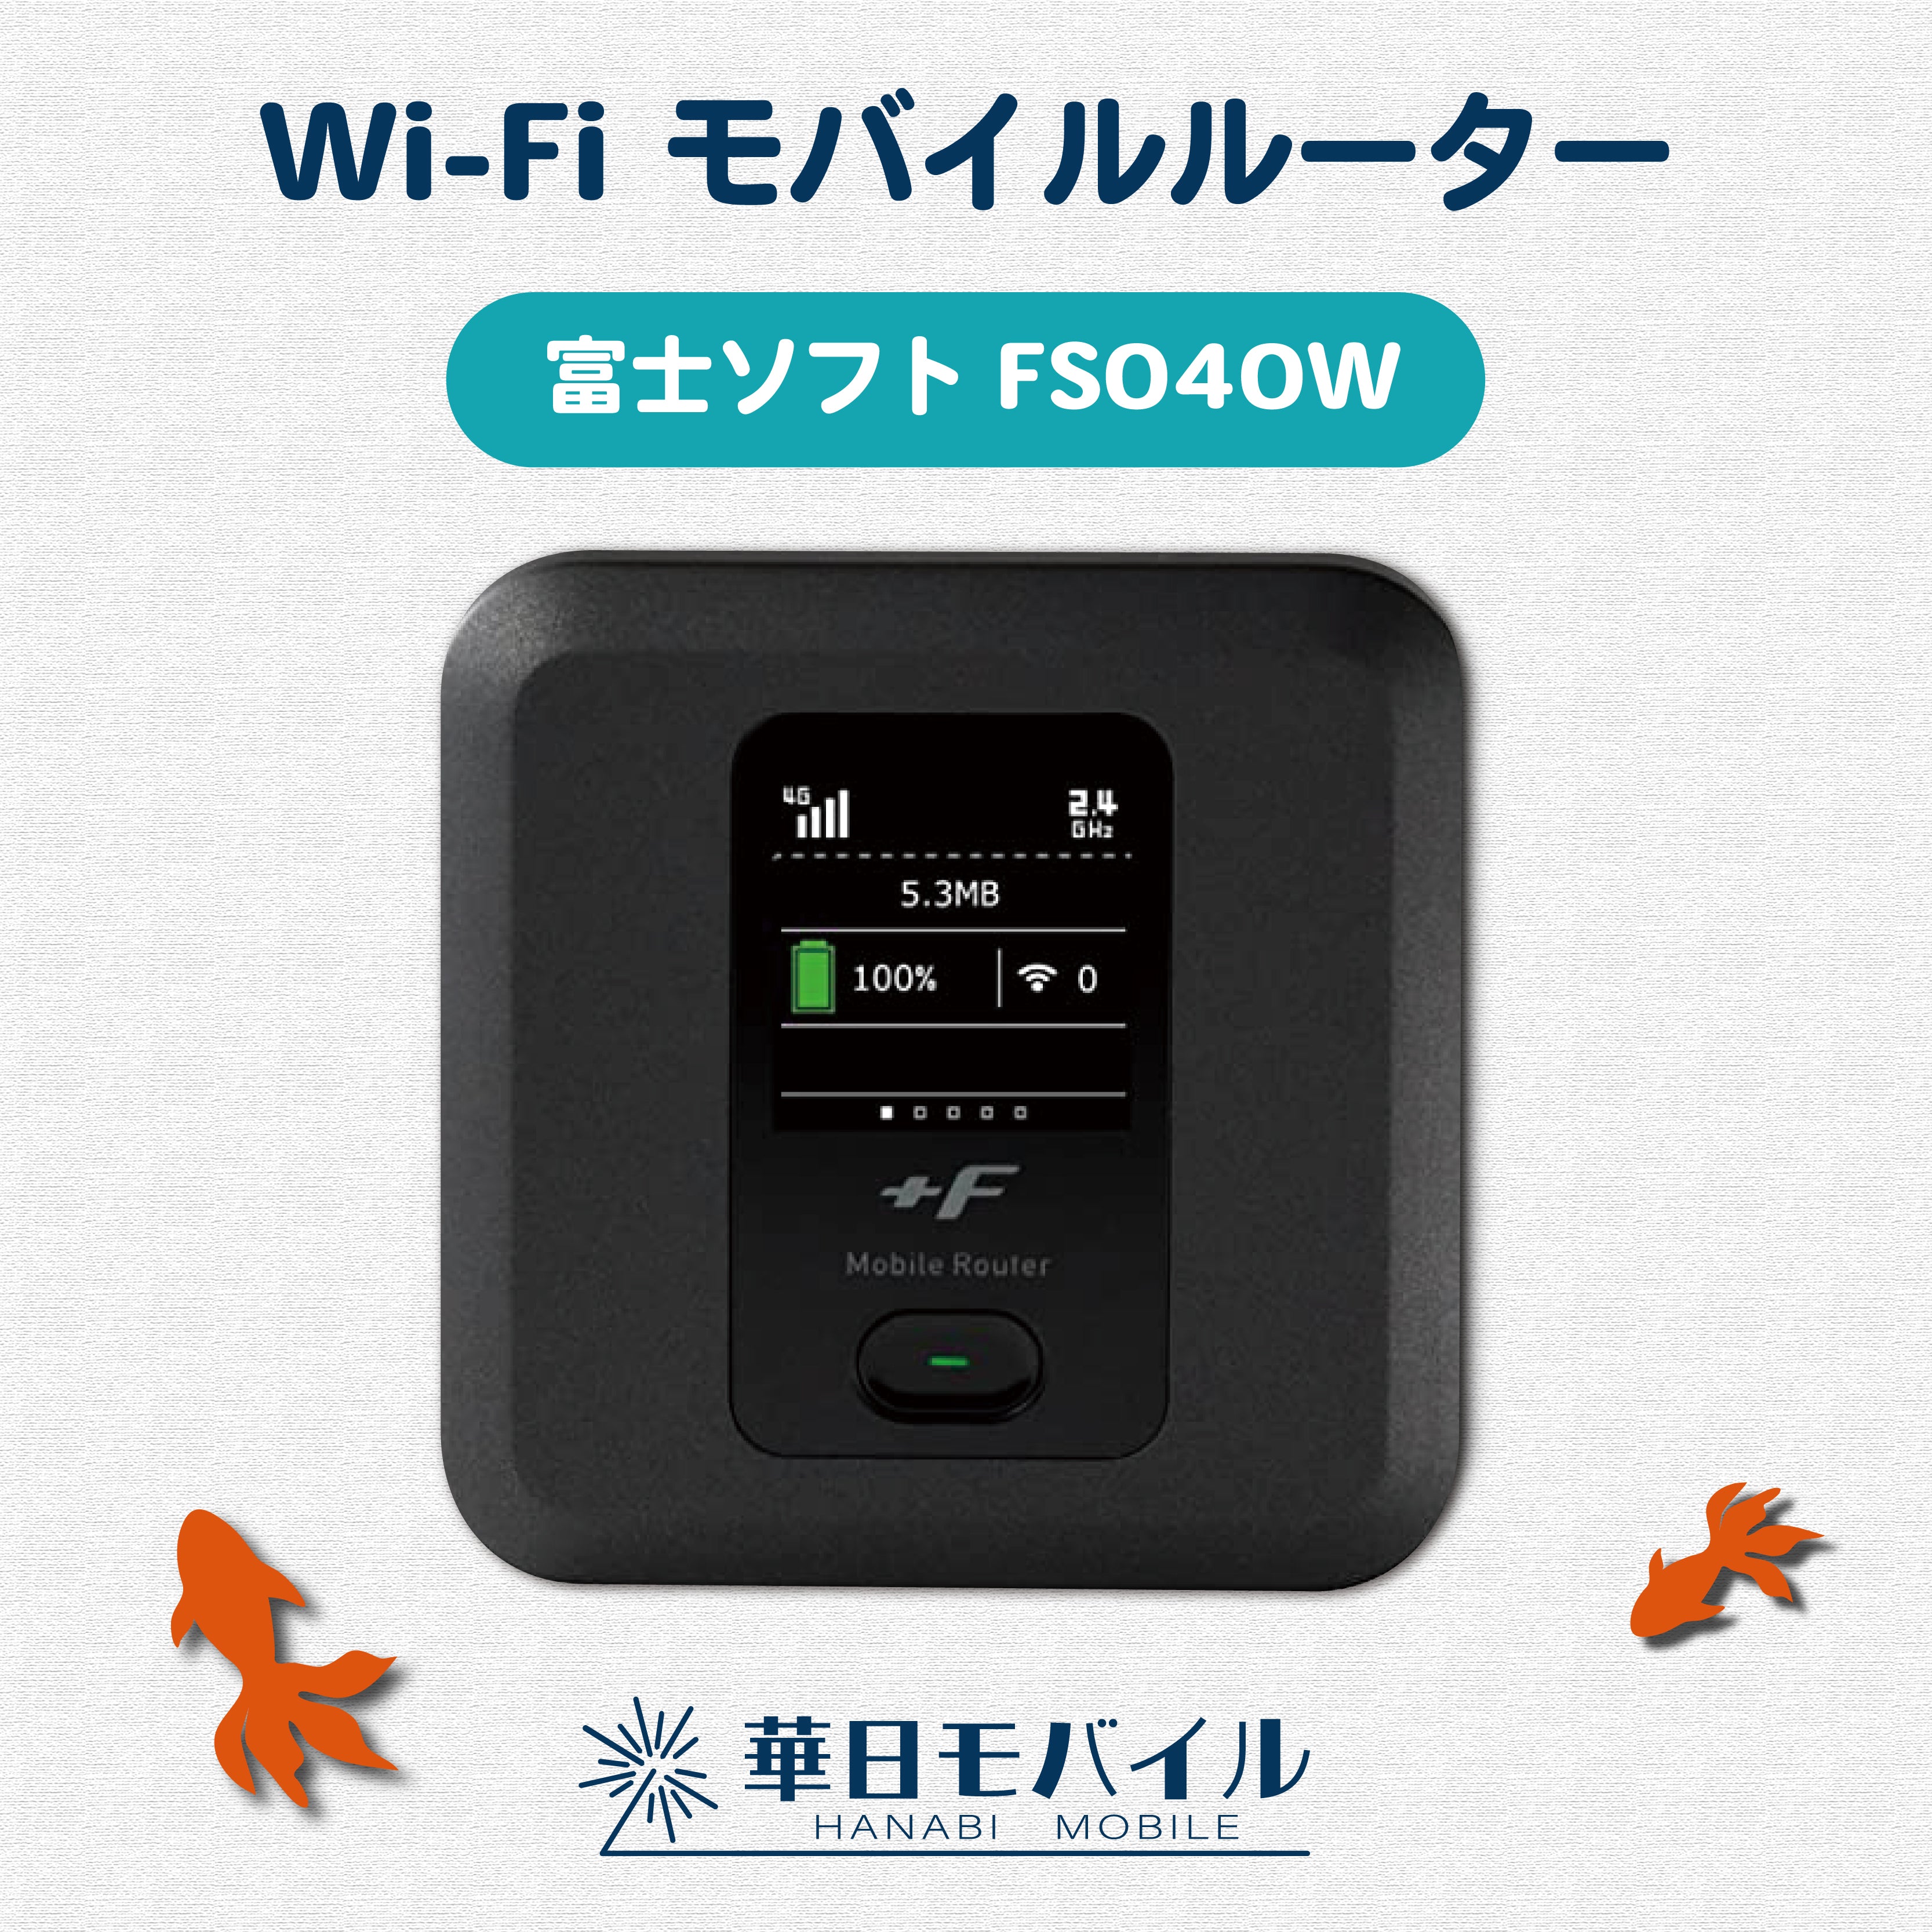 Fujisoft FS040W WIFI Router